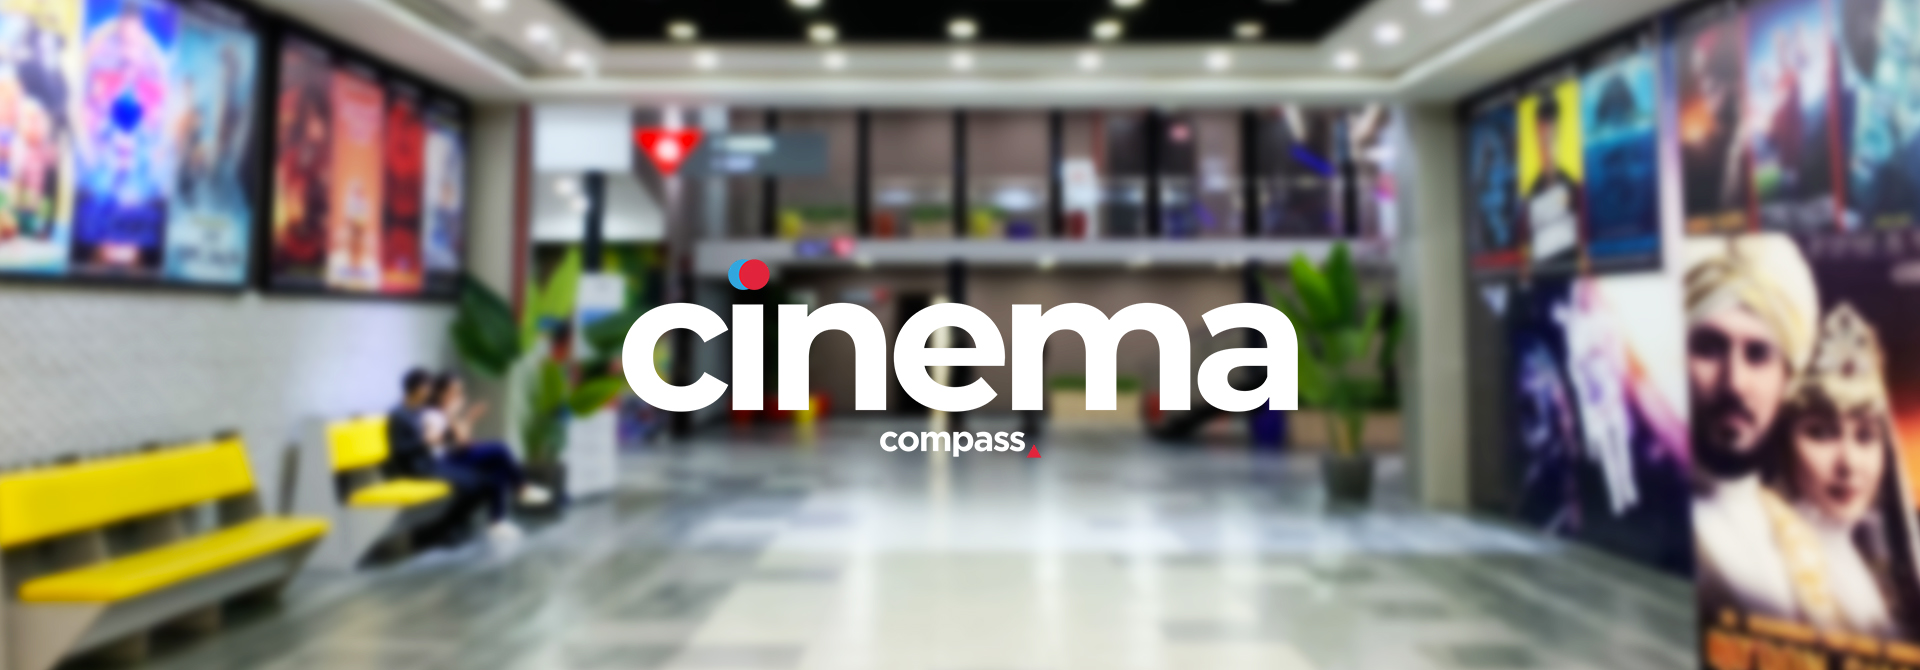 Кинотеатр «Compass Cinema - Малый Зал №4» в Ташкенте - расписание фильмов, афиша кино, адрес, телефоны и другие контакты